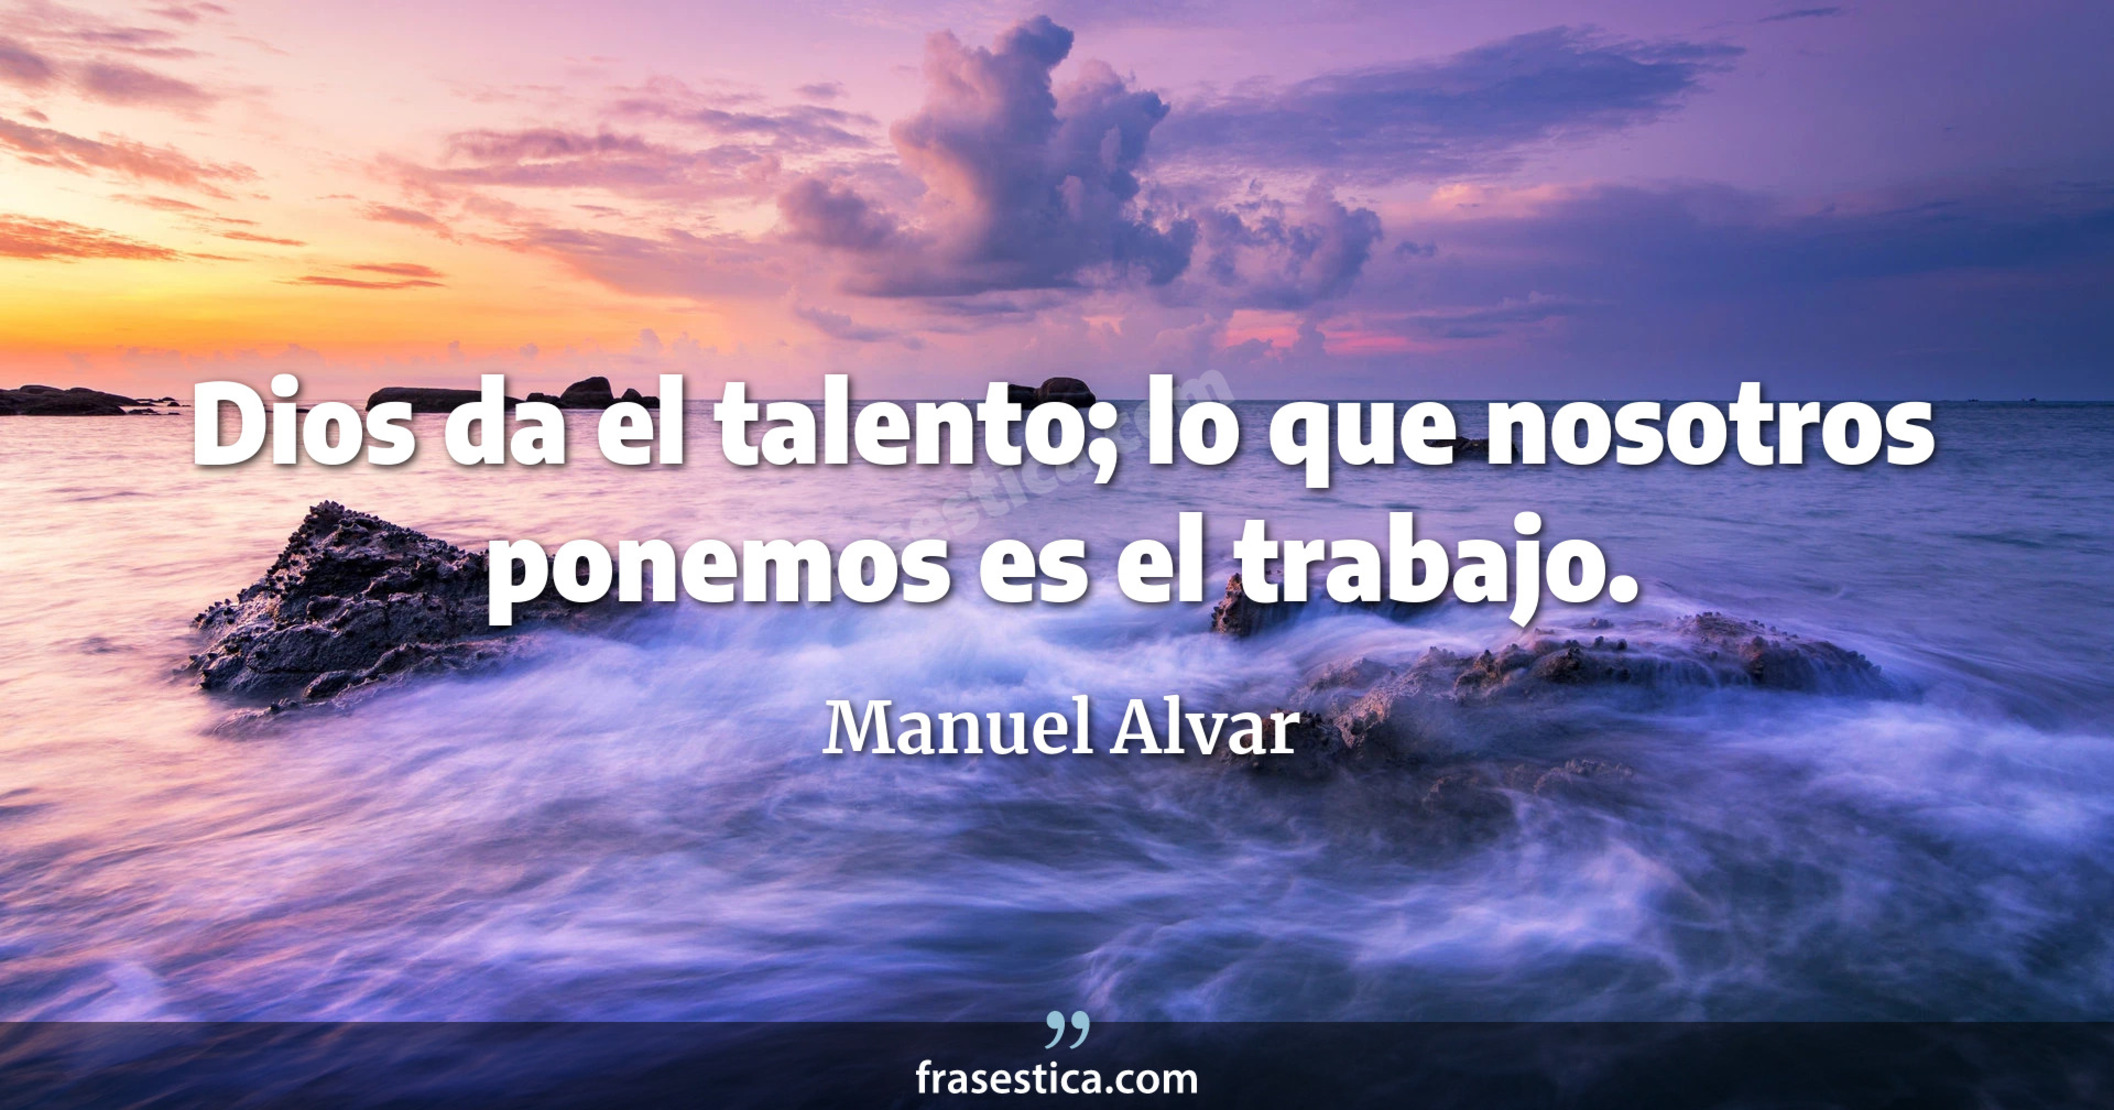 Dios da el talento; lo que nosotros ponemos es el trabajo. - Manuel Alvar